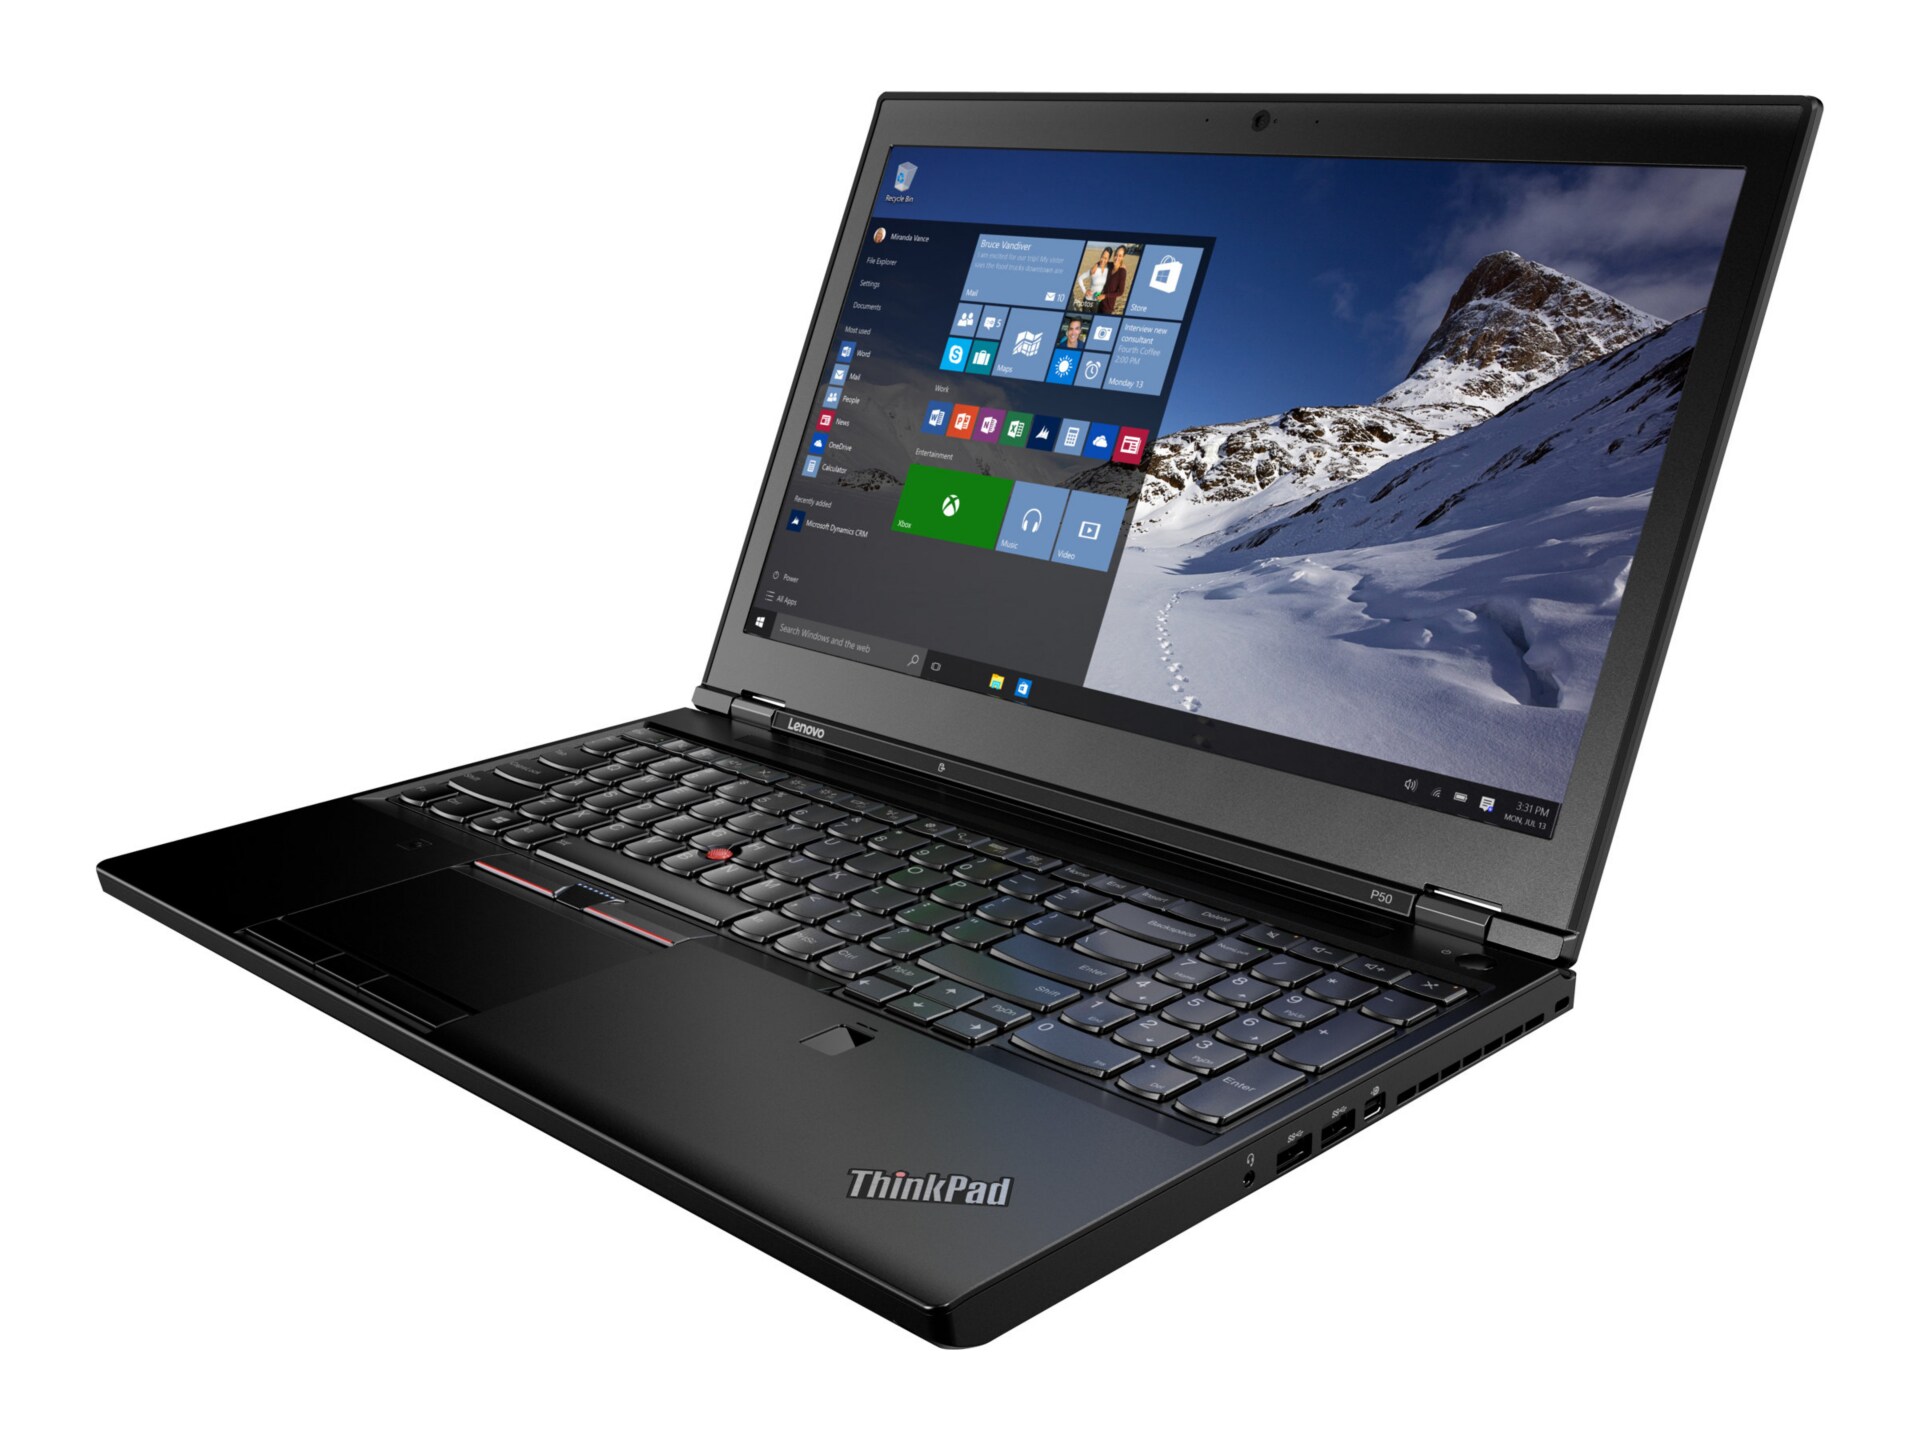 Lenovo ThinkPad P50 - 15.6" - Core i7 6700HQ - 8 GB RAM - 256 GB SSD